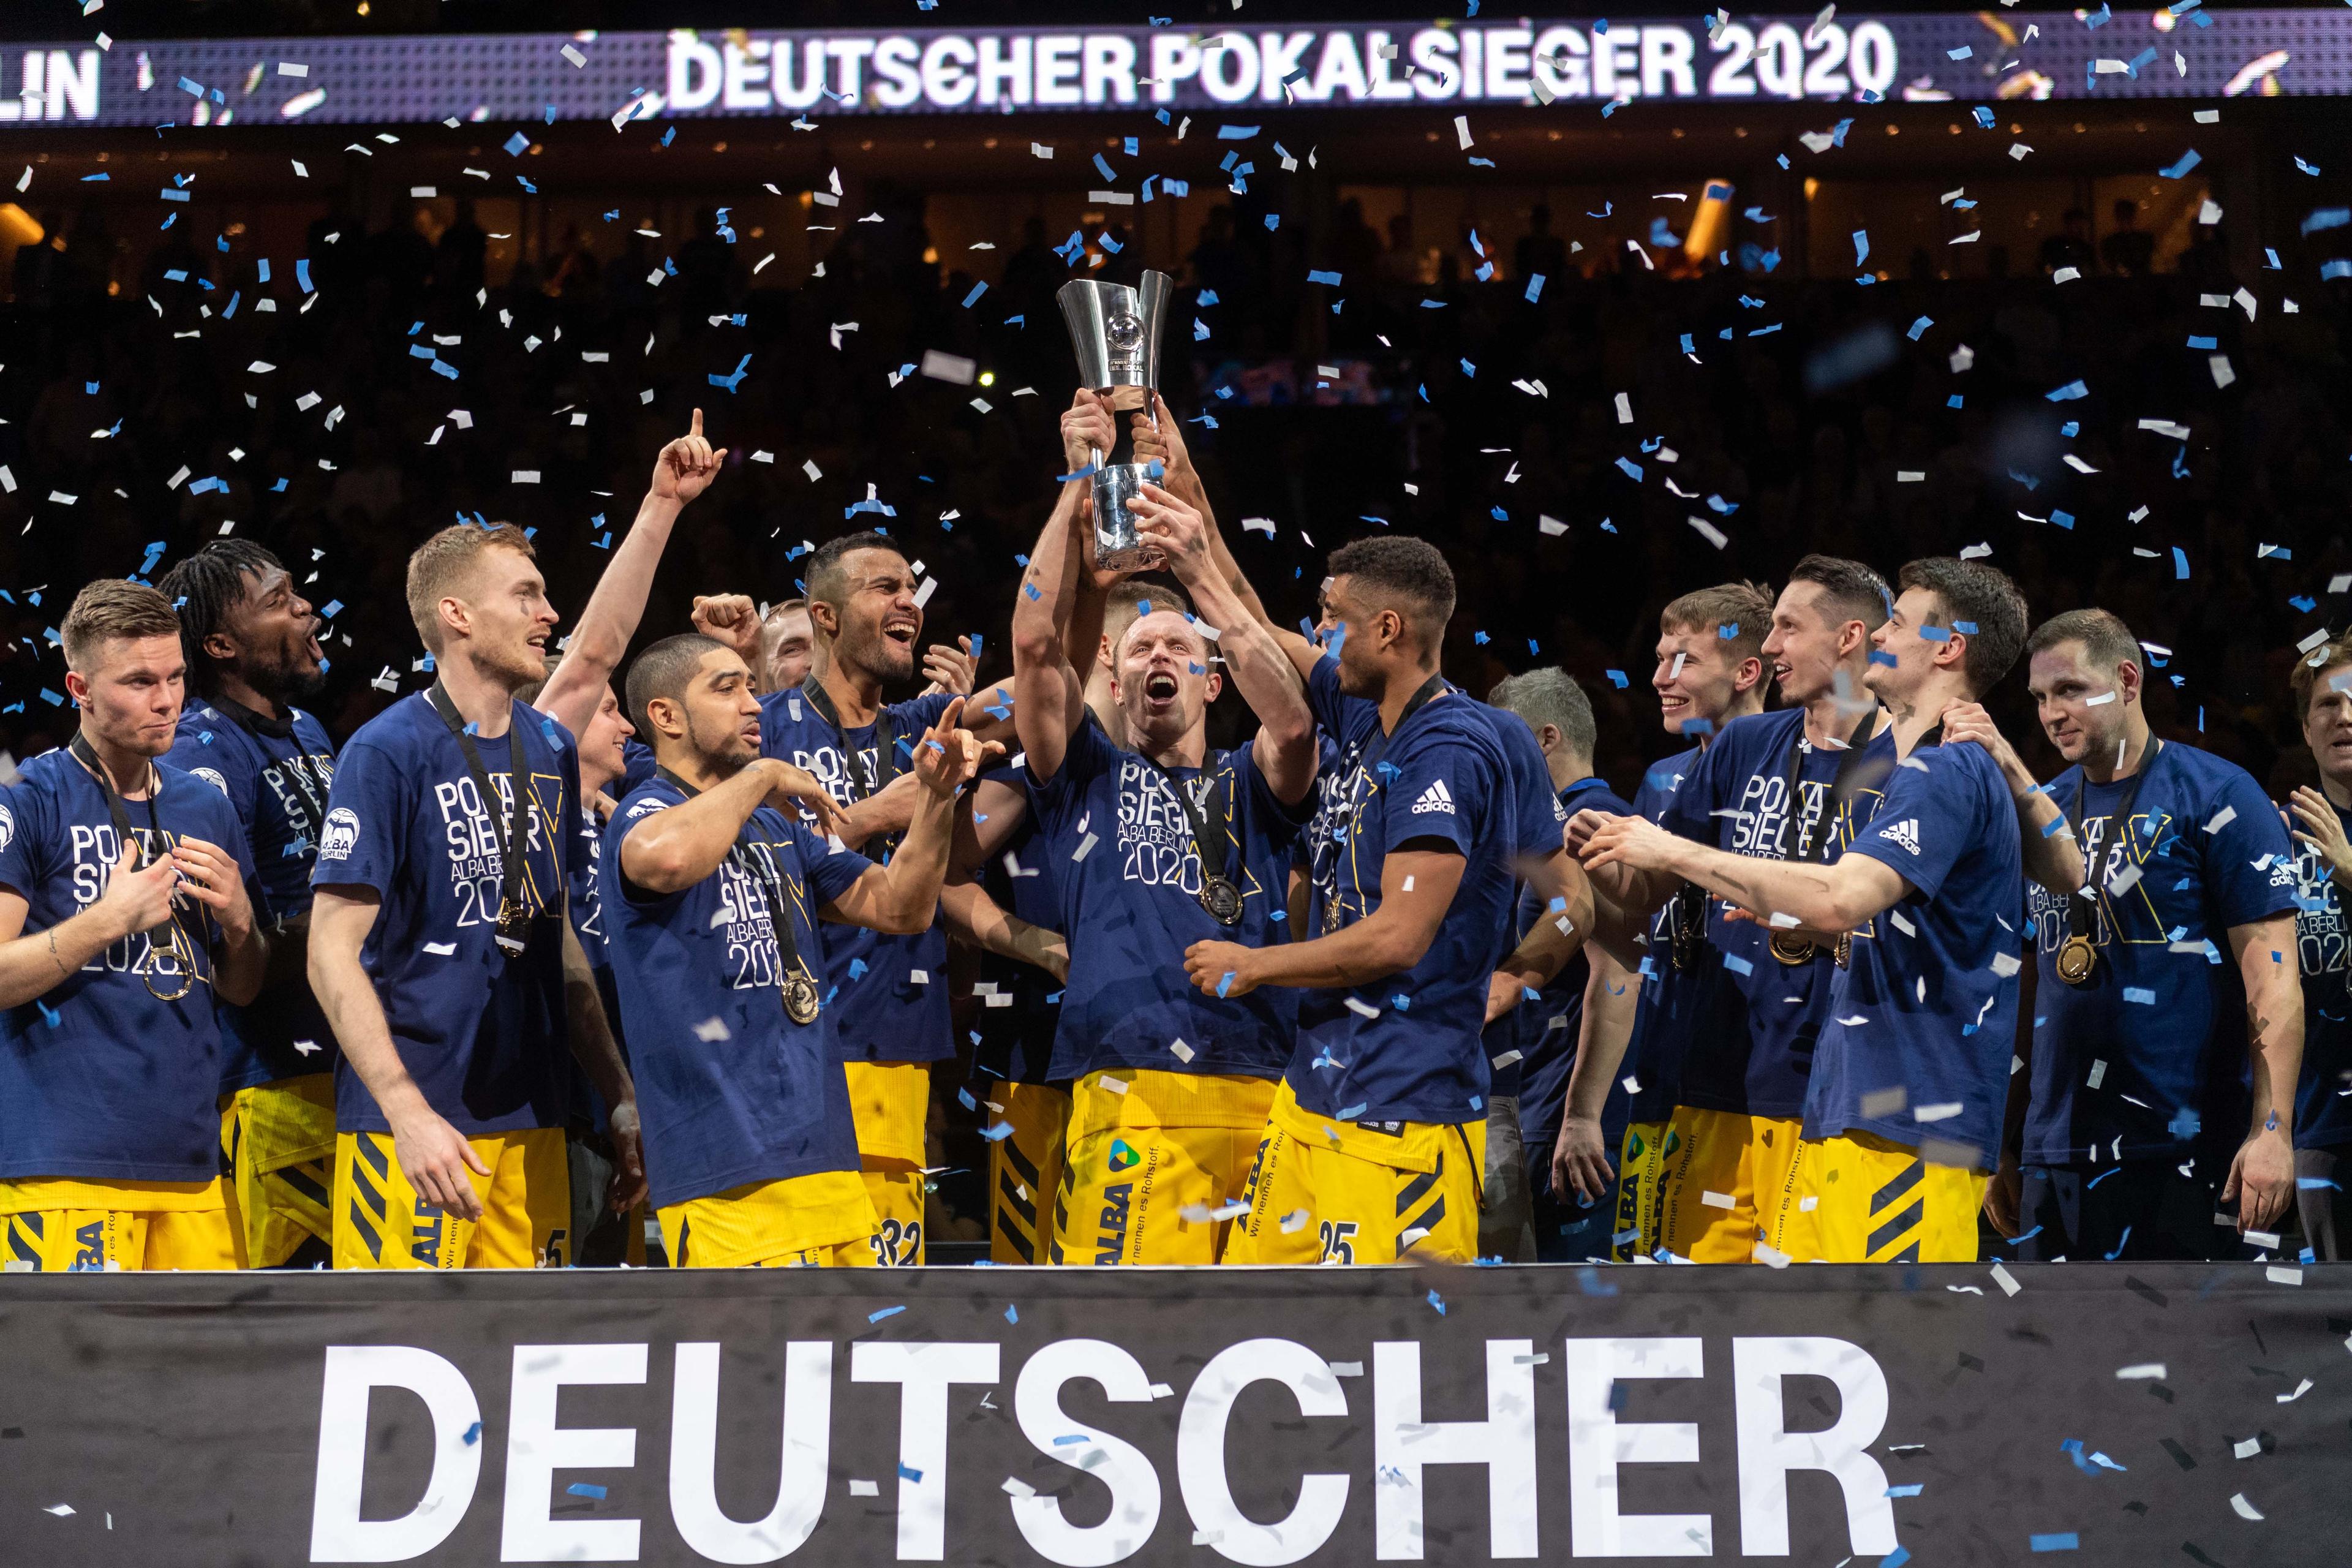 ALBA BERLIN ist nicht nur als amtierender Meister und Ausrichter der Favorit auf den Pokaltitel, sondern die Berliner haben den anderen drei Kandidaten im diesjährigen TOP FOUR eine riesige Erfahrung in diesem Wettbewerb voraus – und könnten Leverkusen als Rekordpokalsieger ablösen.